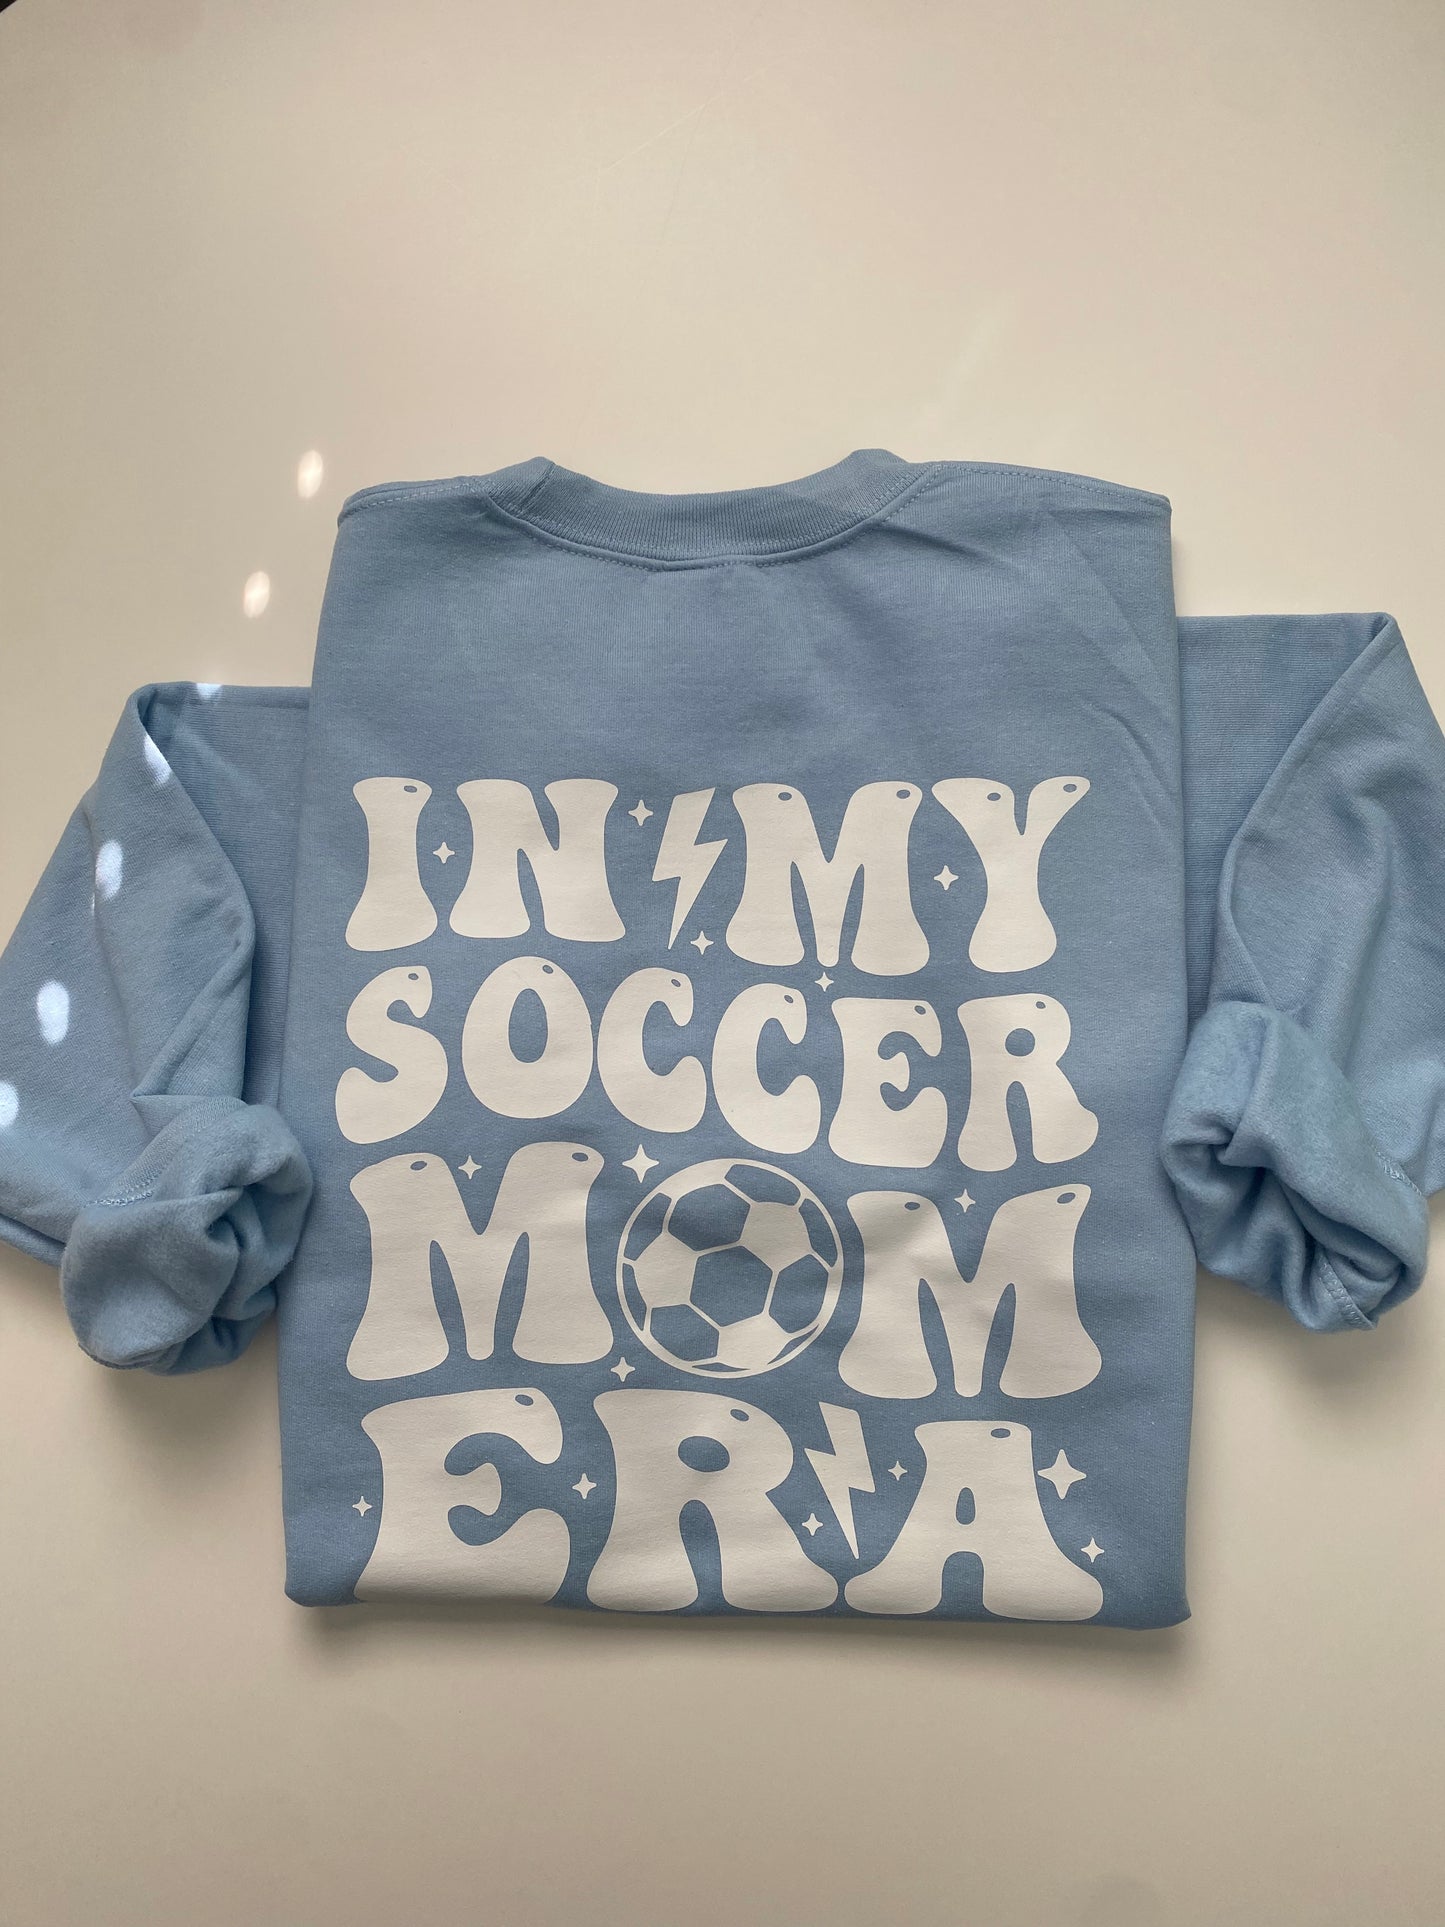 Soccer Mom Era